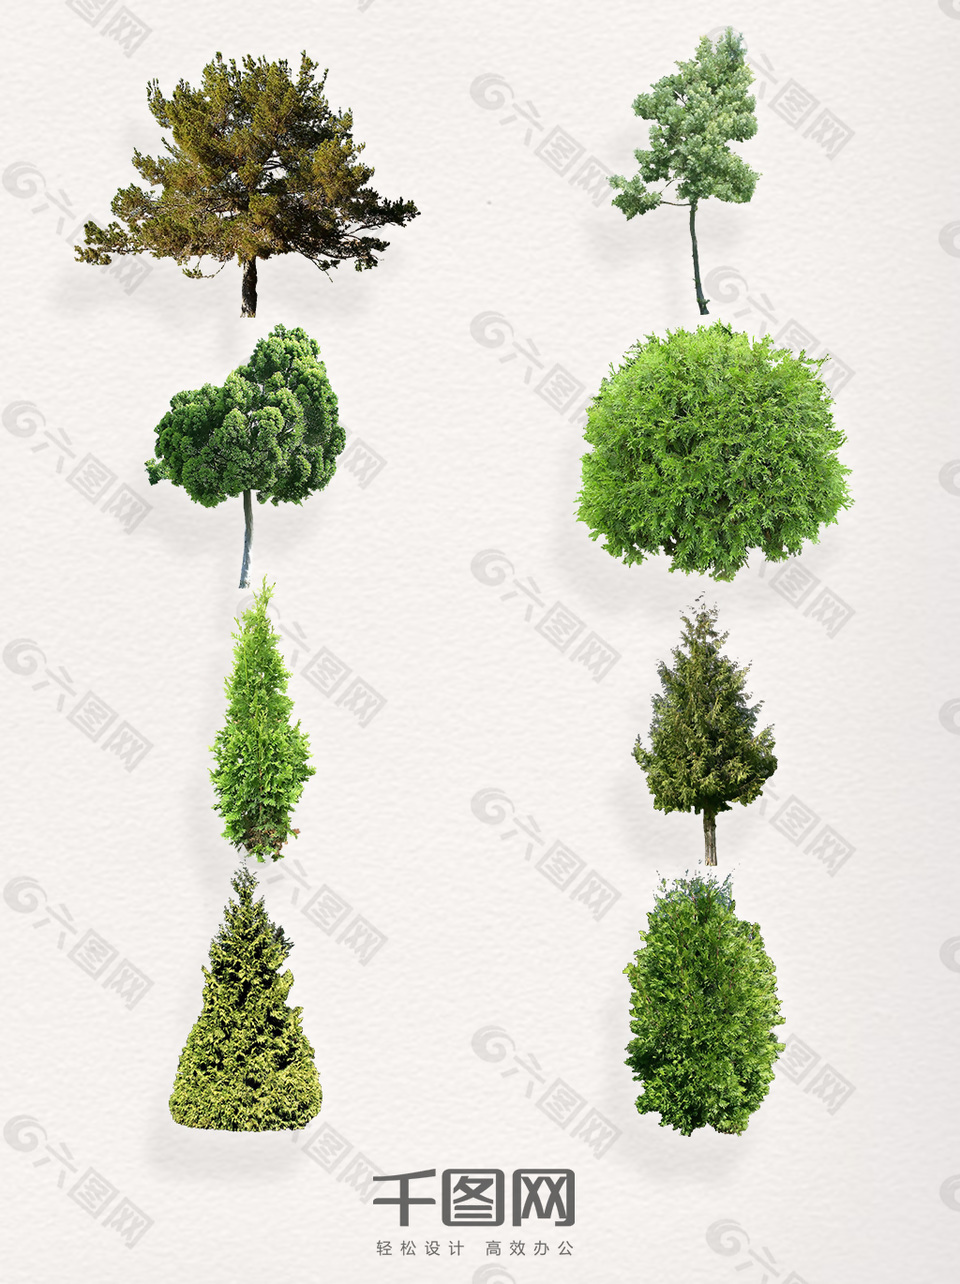 一组嫩绿的松树装饰图案